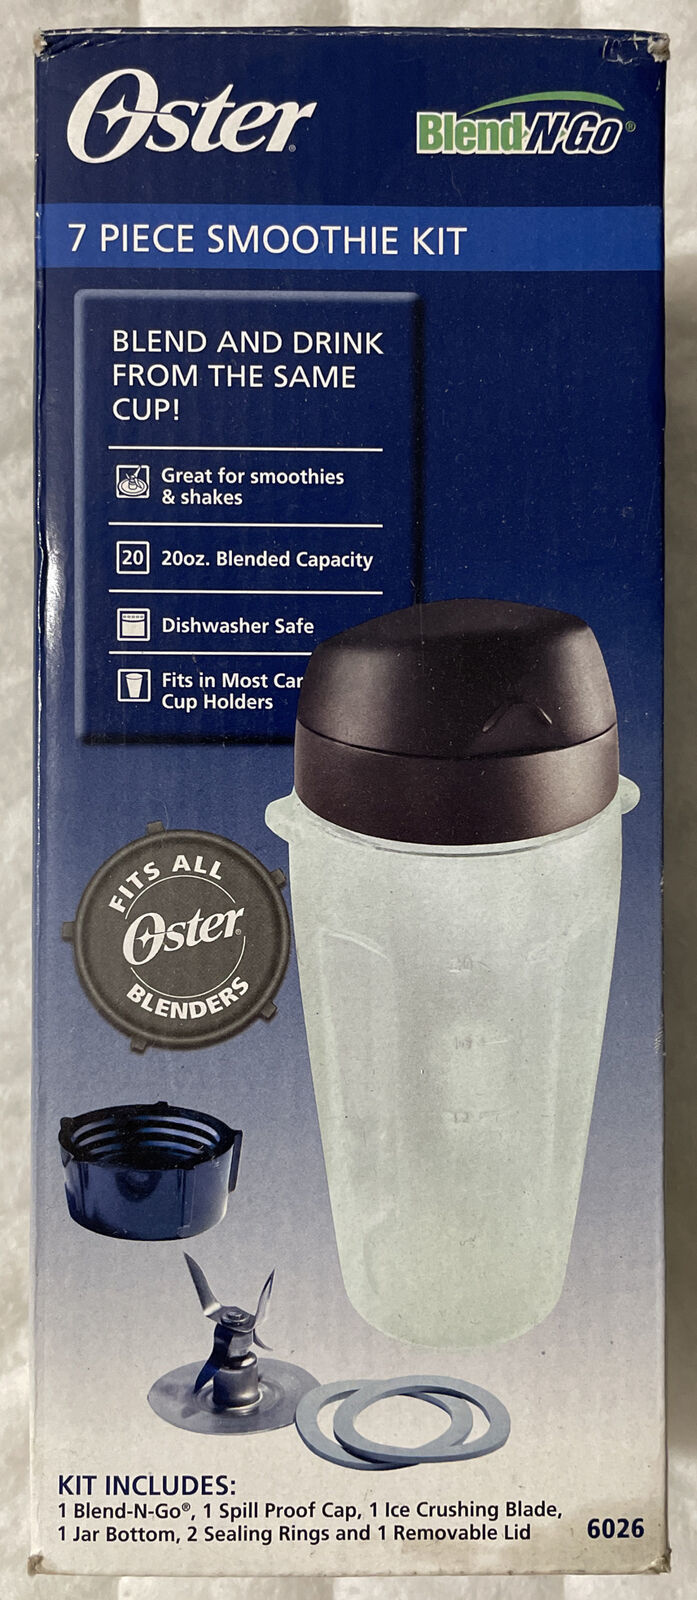 Oster Blend-N-Go Blender Smoothie Kit, and 50 similar items